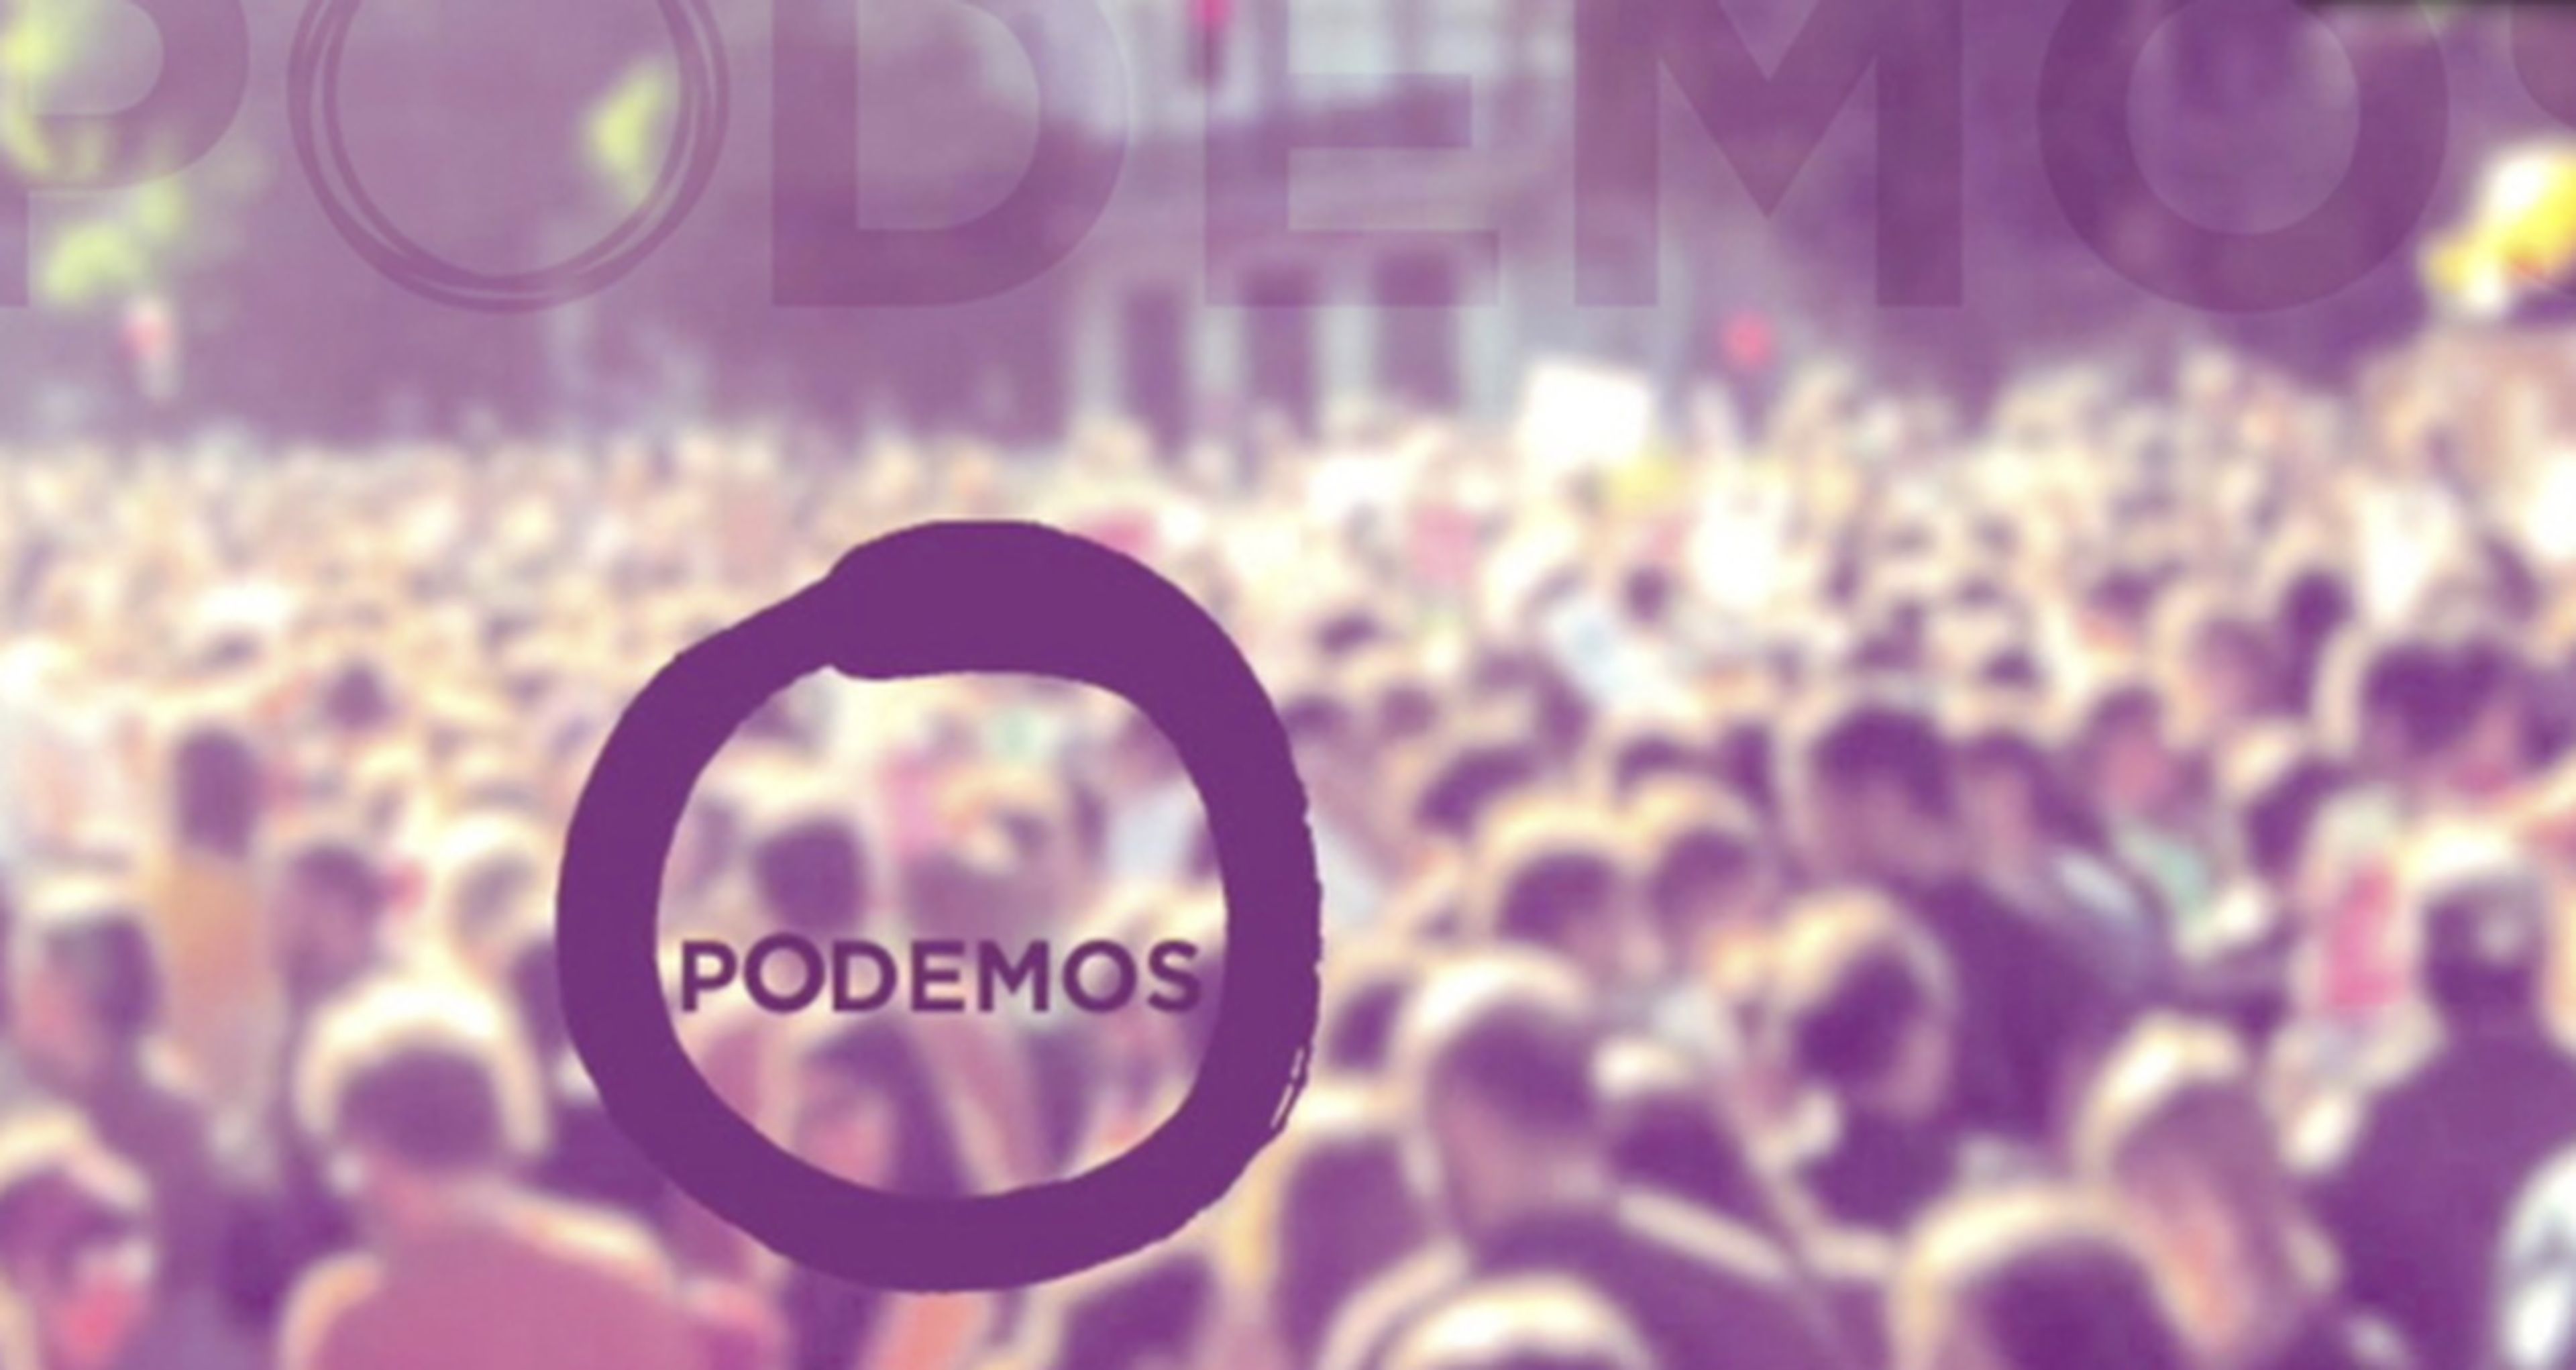 La película de Podemos se estrenará un día después de las elecciones